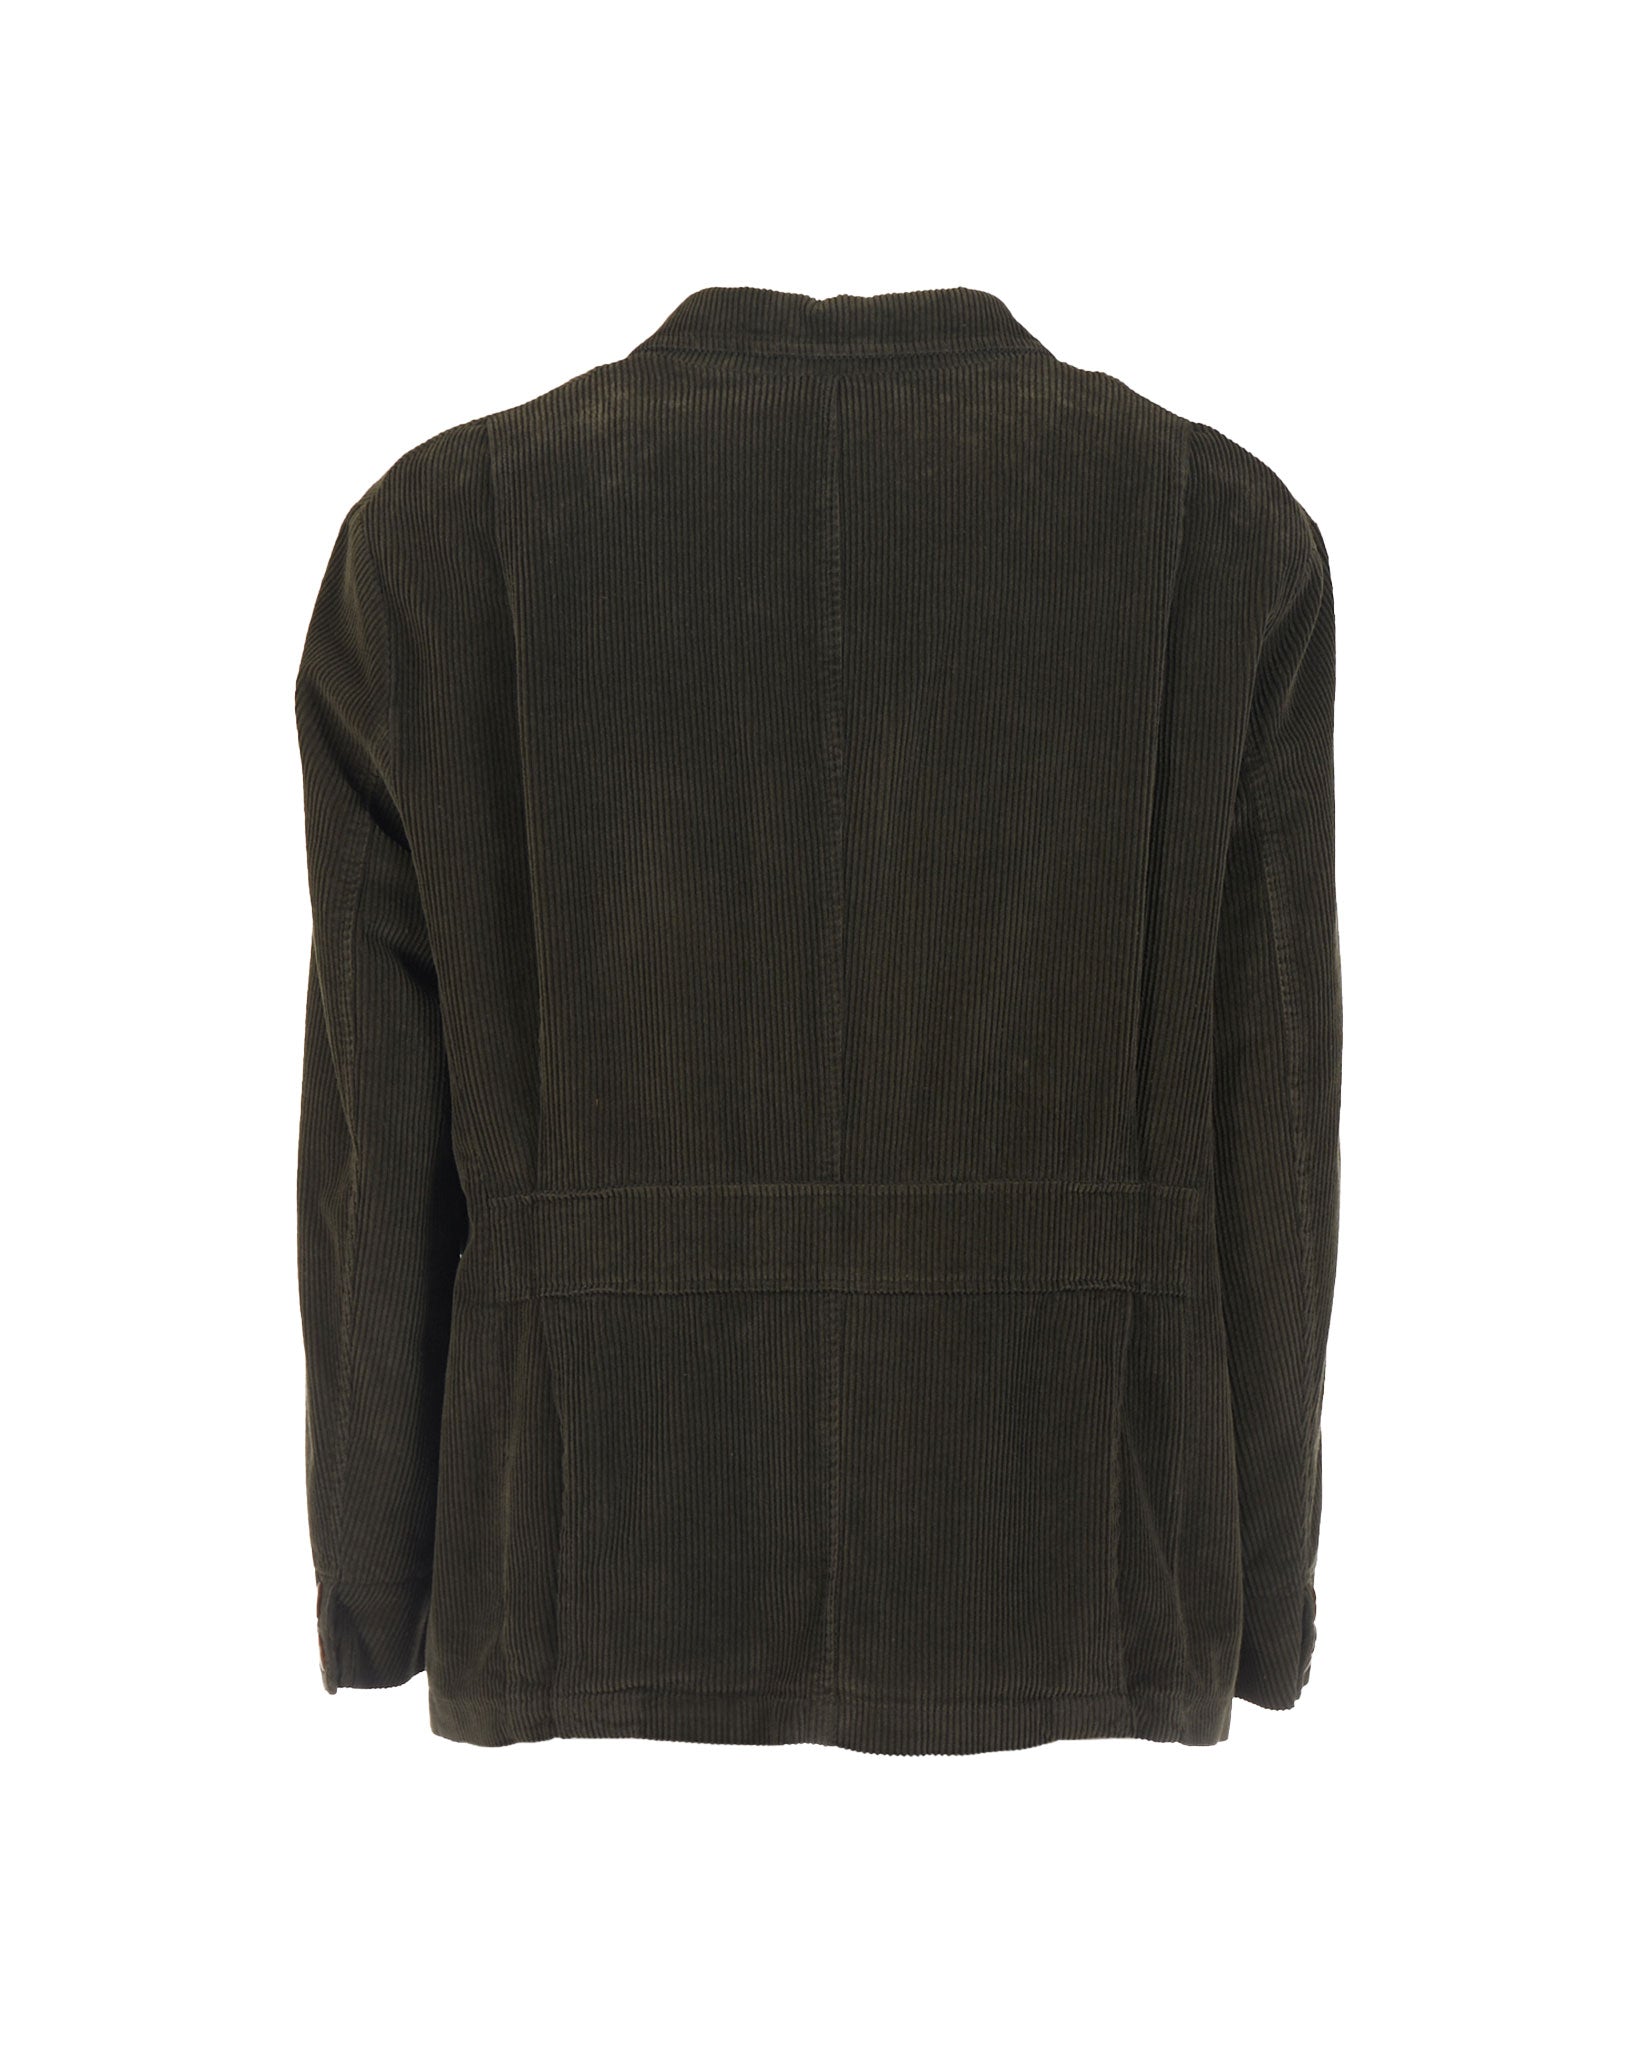 Four-pocket jacket in 500-line velvet